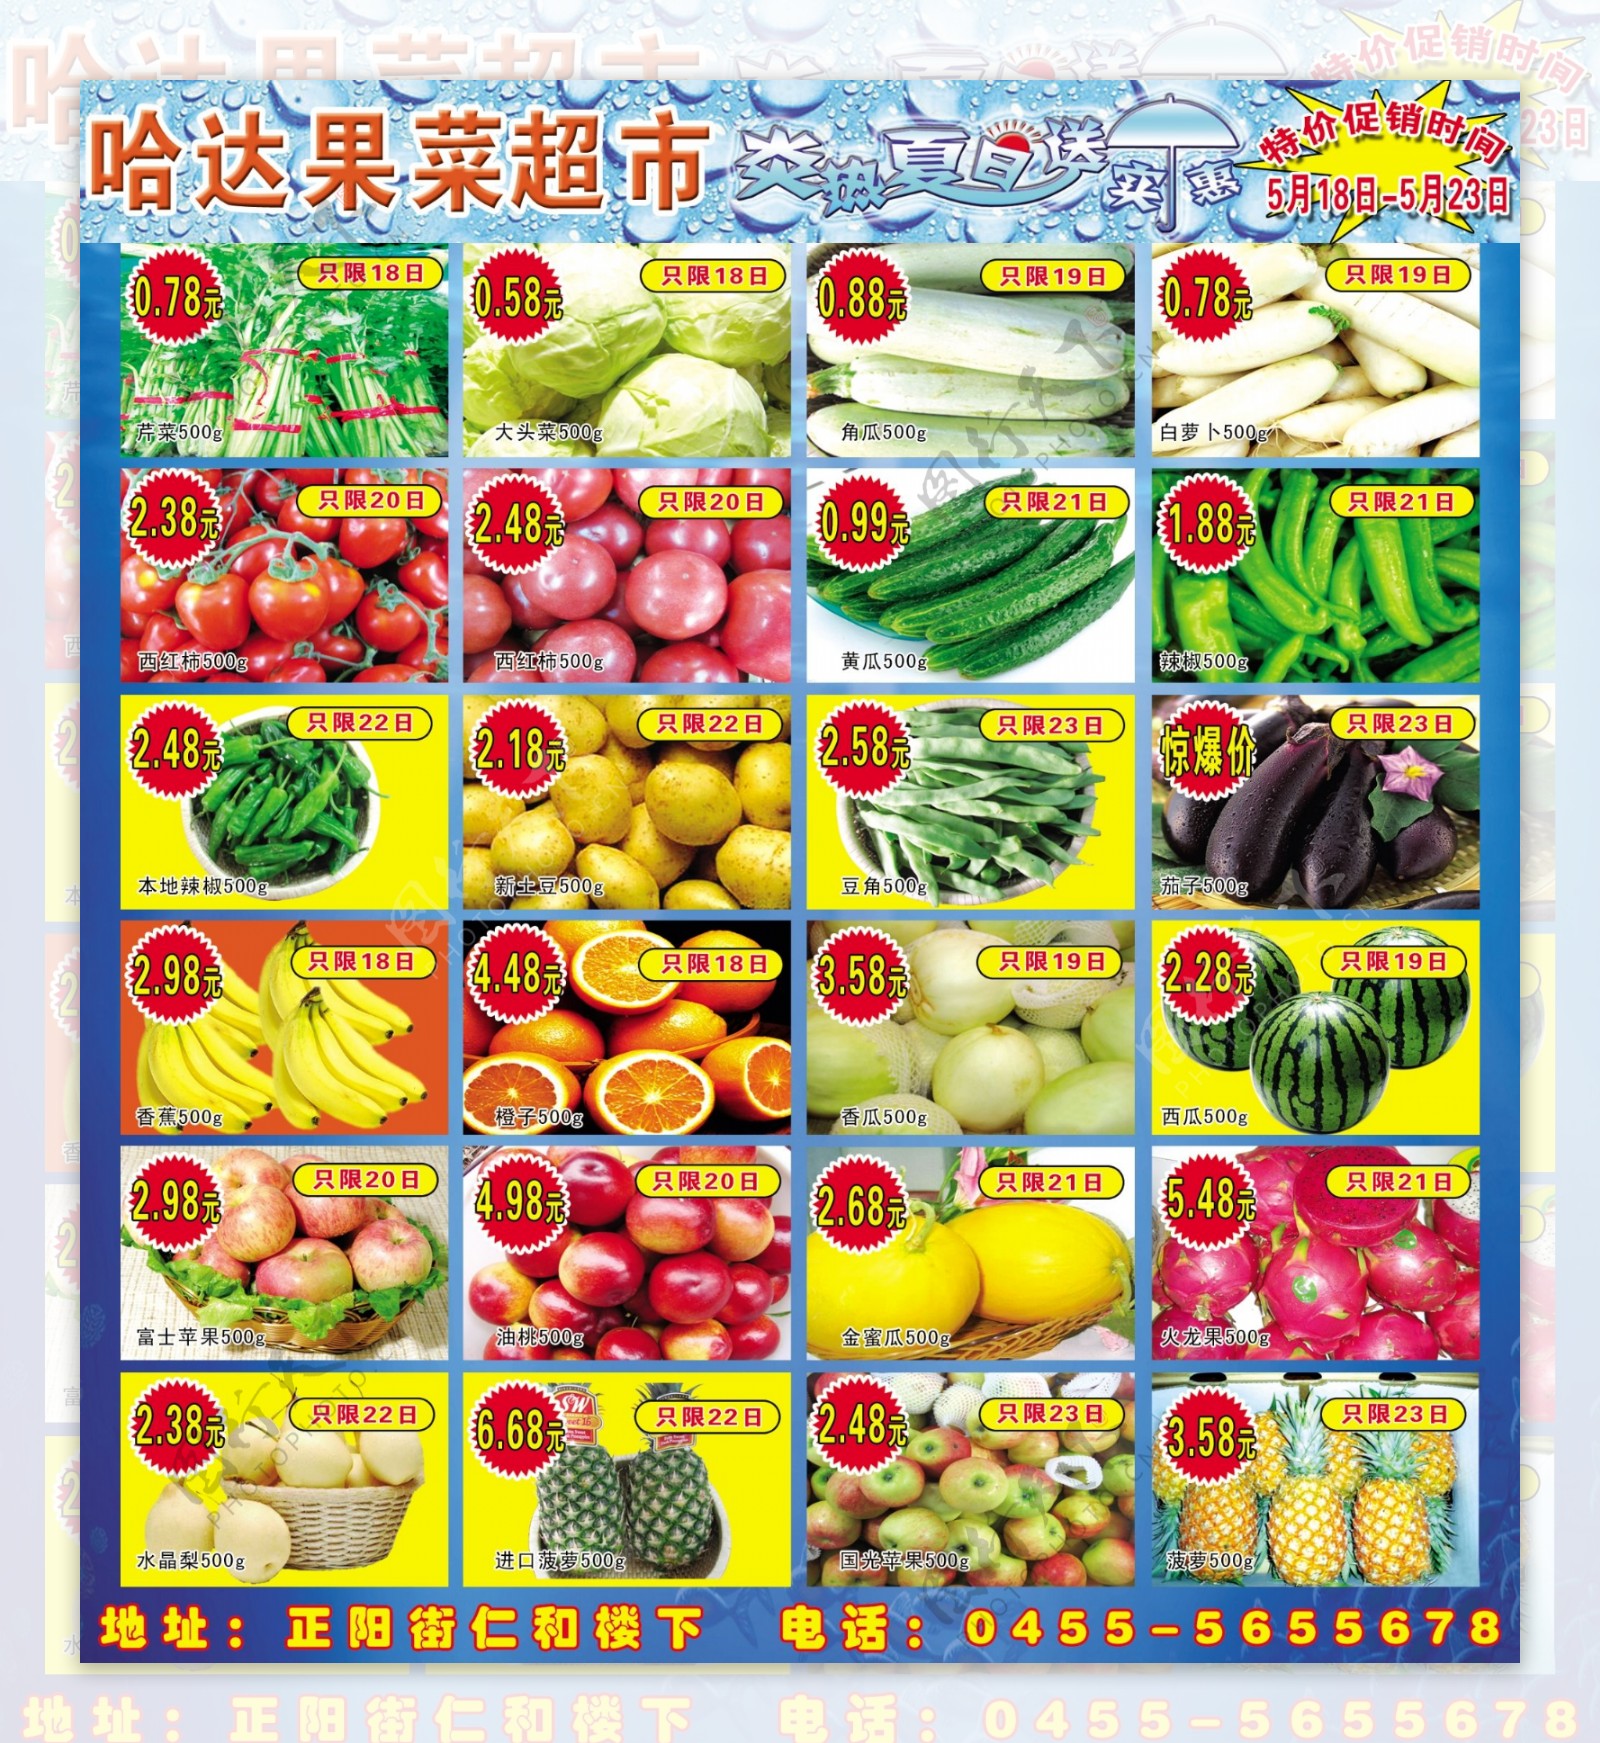 蔬菜广告图片